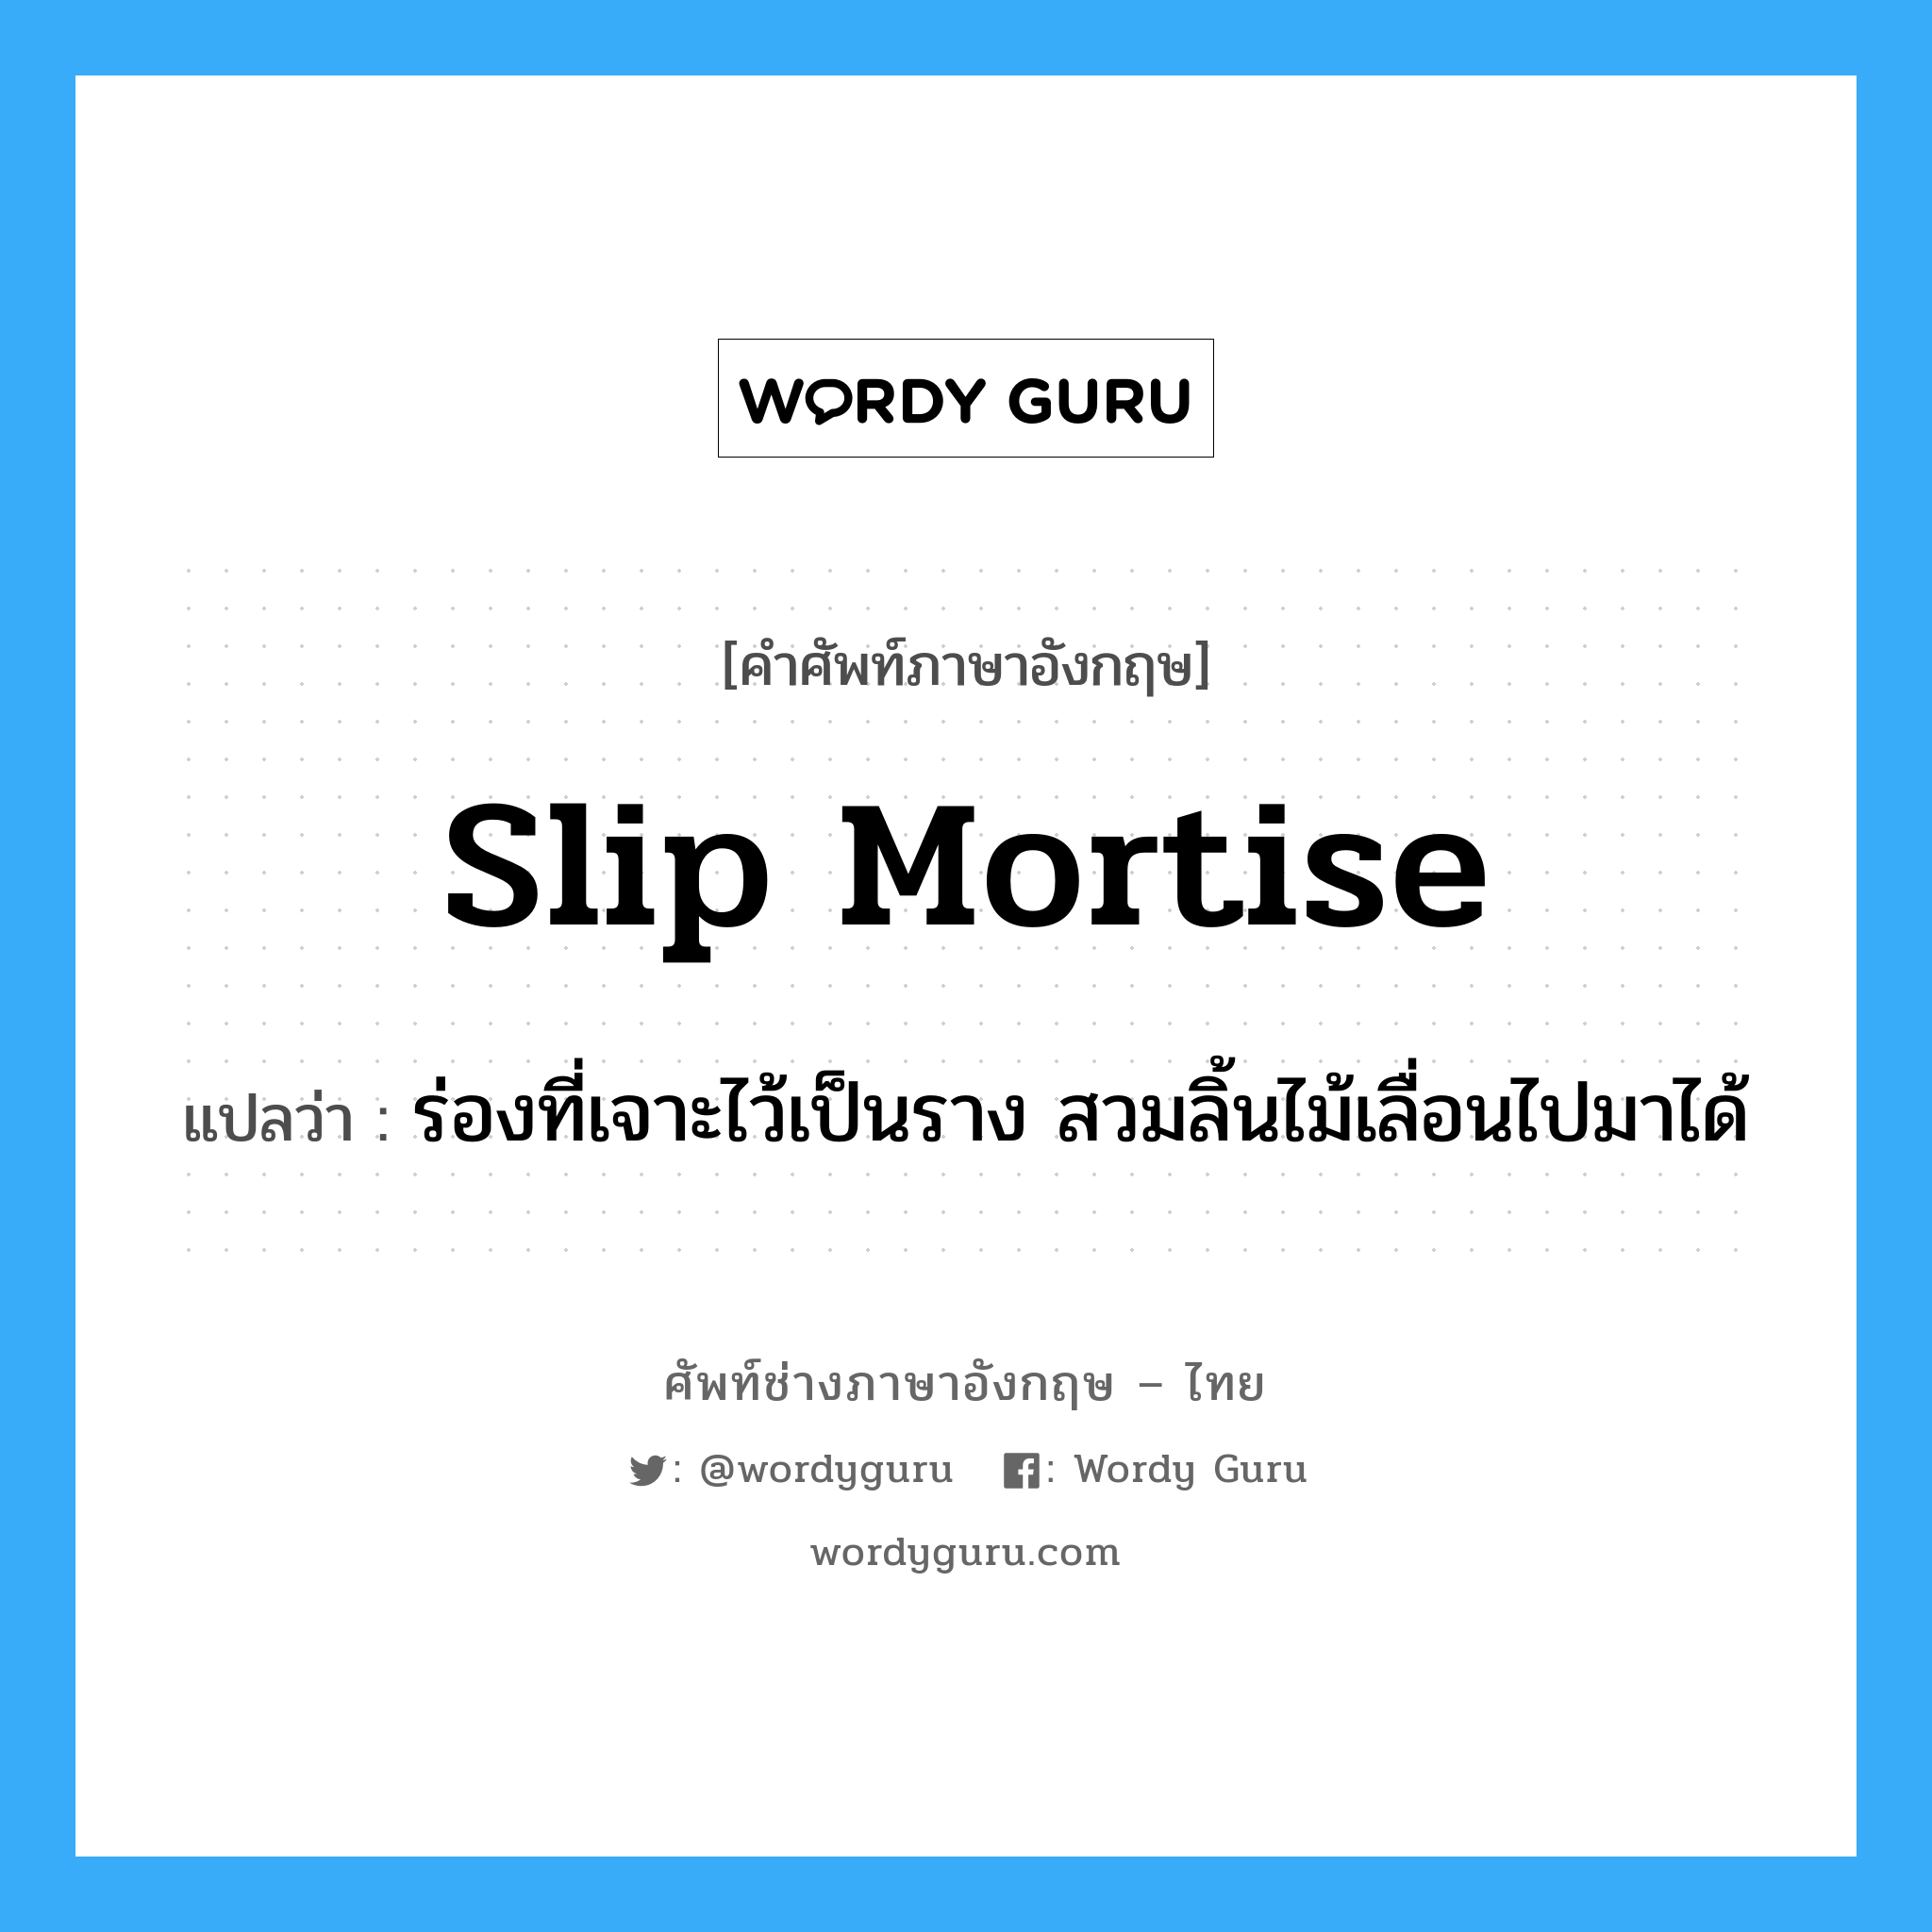 slip mortise แปลว่า?, คำศัพท์ช่างภาษาอังกฤษ - ไทย slip mortise คำศัพท์ภาษาอังกฤษ slip mortise แปลว่า ร่องที่เจาะไว้เป็นราง สวมลิ้นไม้เลื่อนไปมาได้